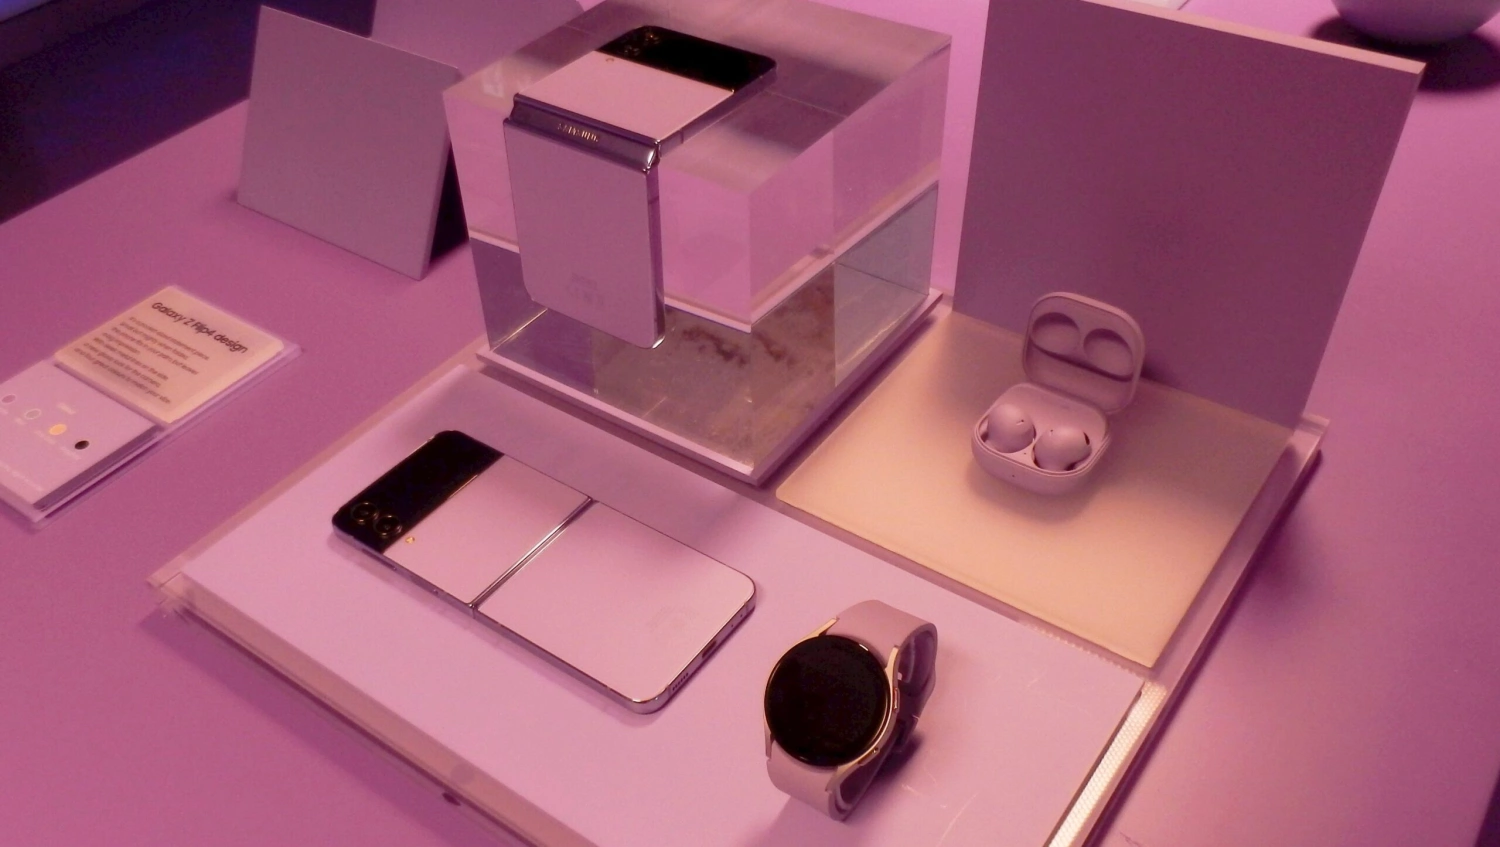 Leleplezte új csúcsmobiljait a Samsung, itt vannak a futurisztikus, hajtogatható telefonok